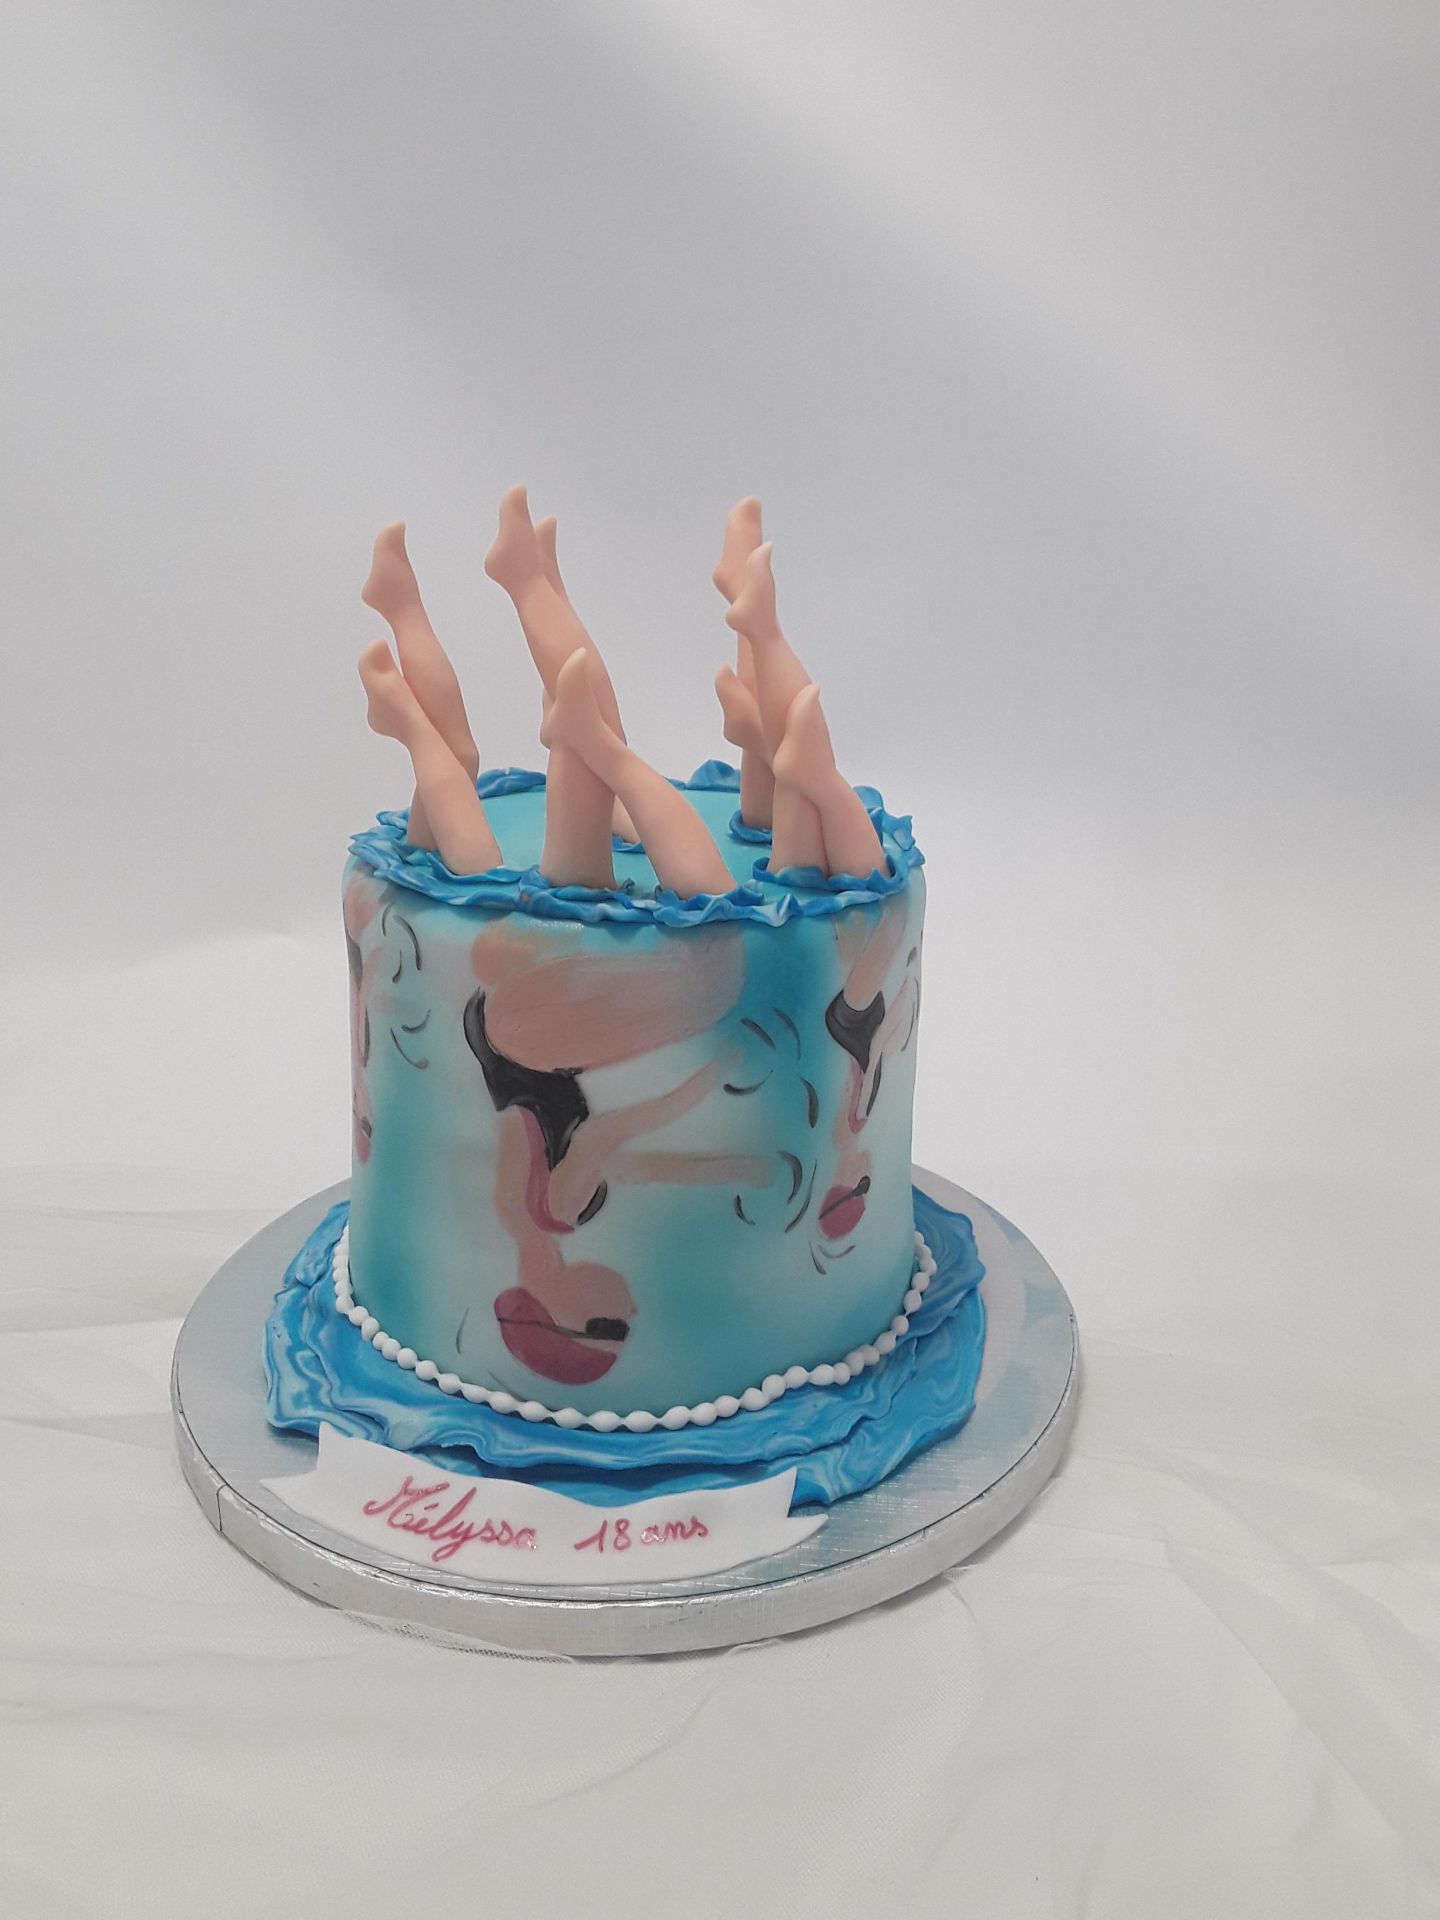 À la recherche de la décoration gâteau d'anniversaire parfaite